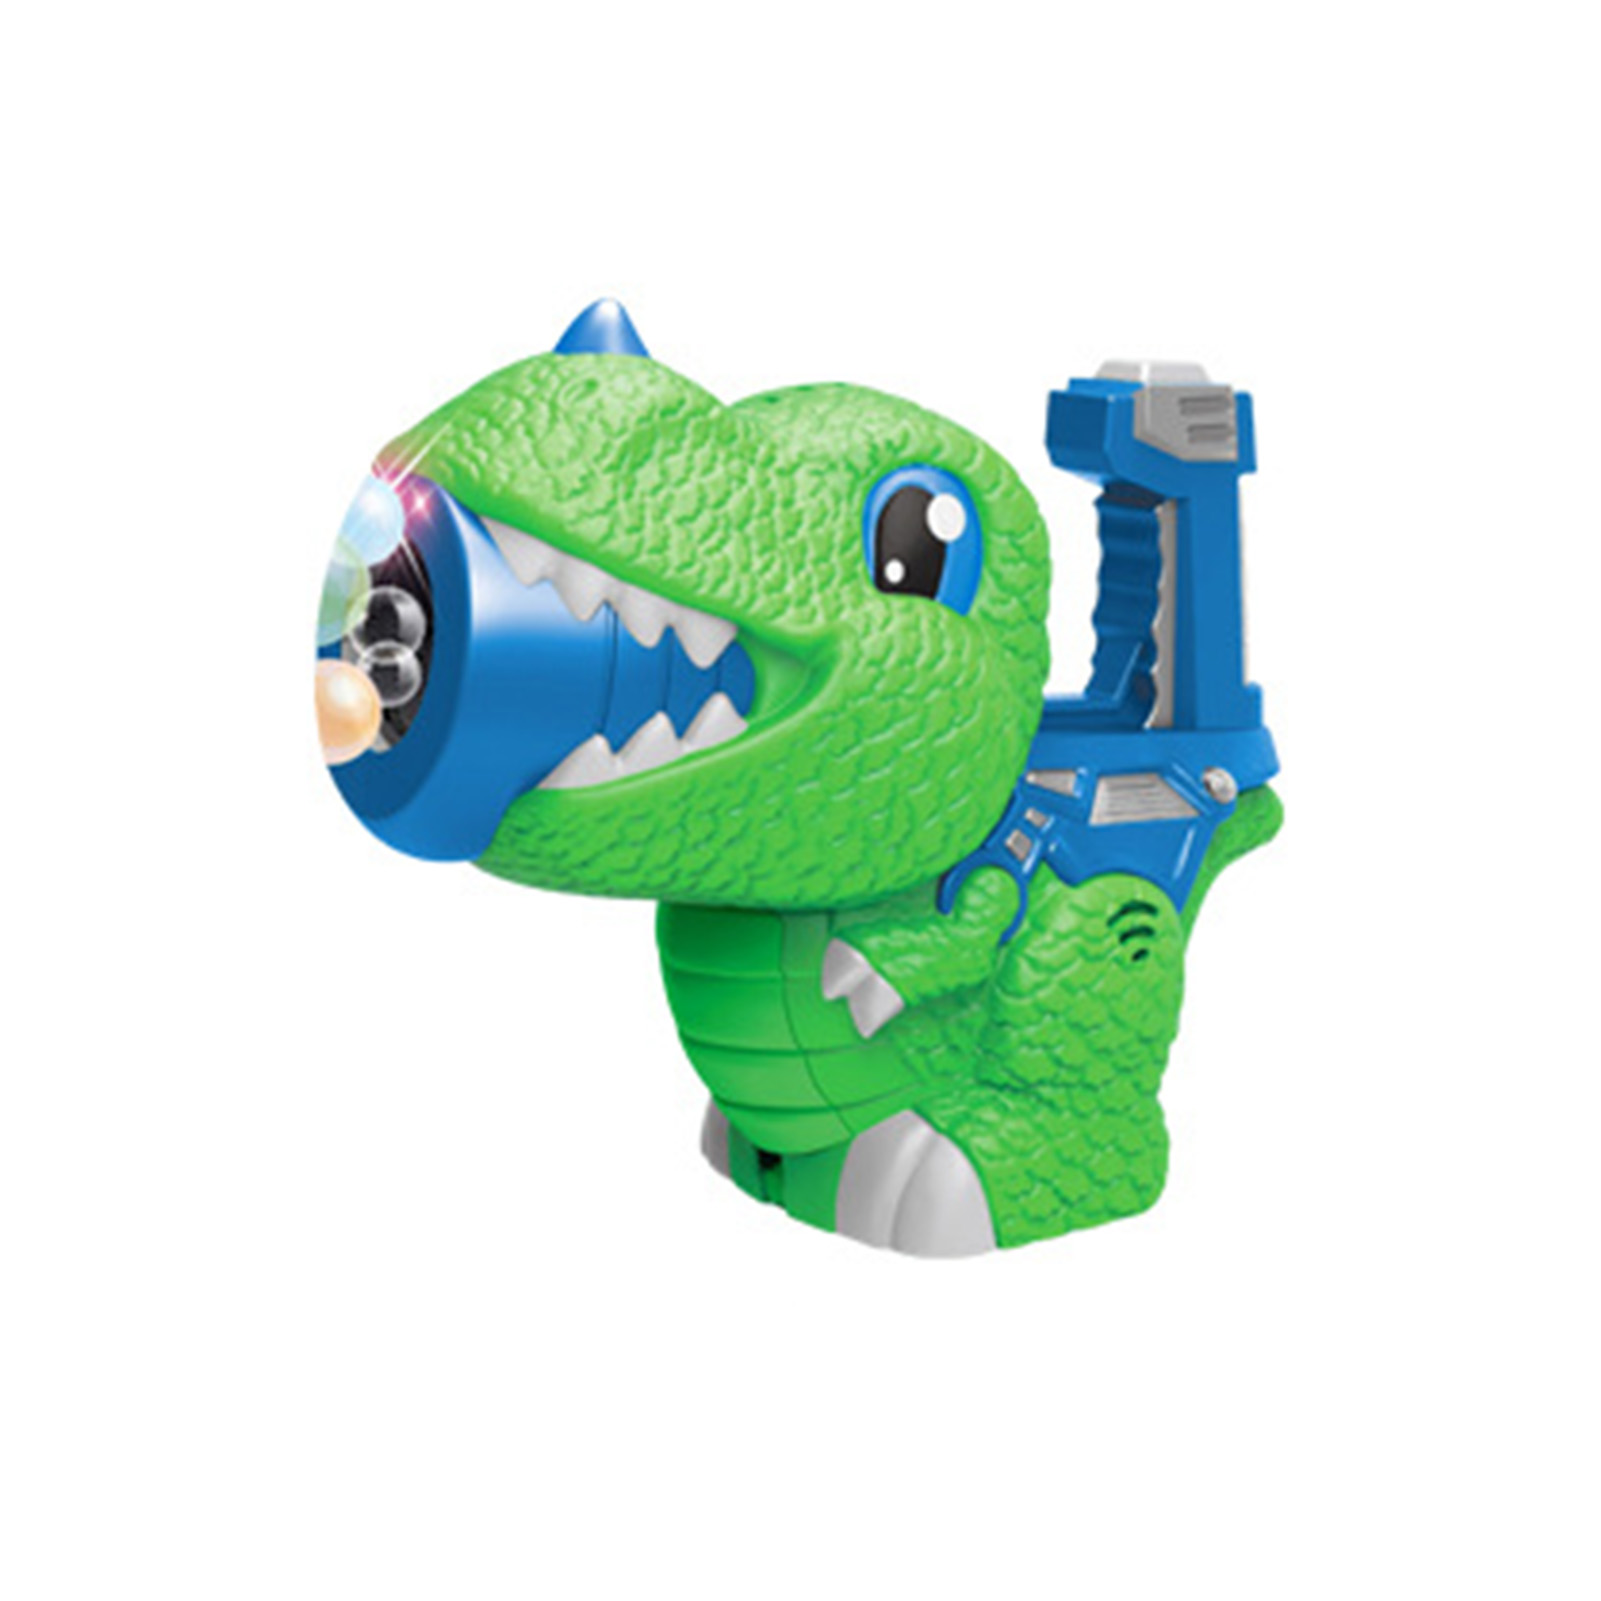 공룡 거품 BlowerAutomatic 버블 머신 유아 여름 야외 버블 장난감 안전 재료 아이들을 사용하기 편리